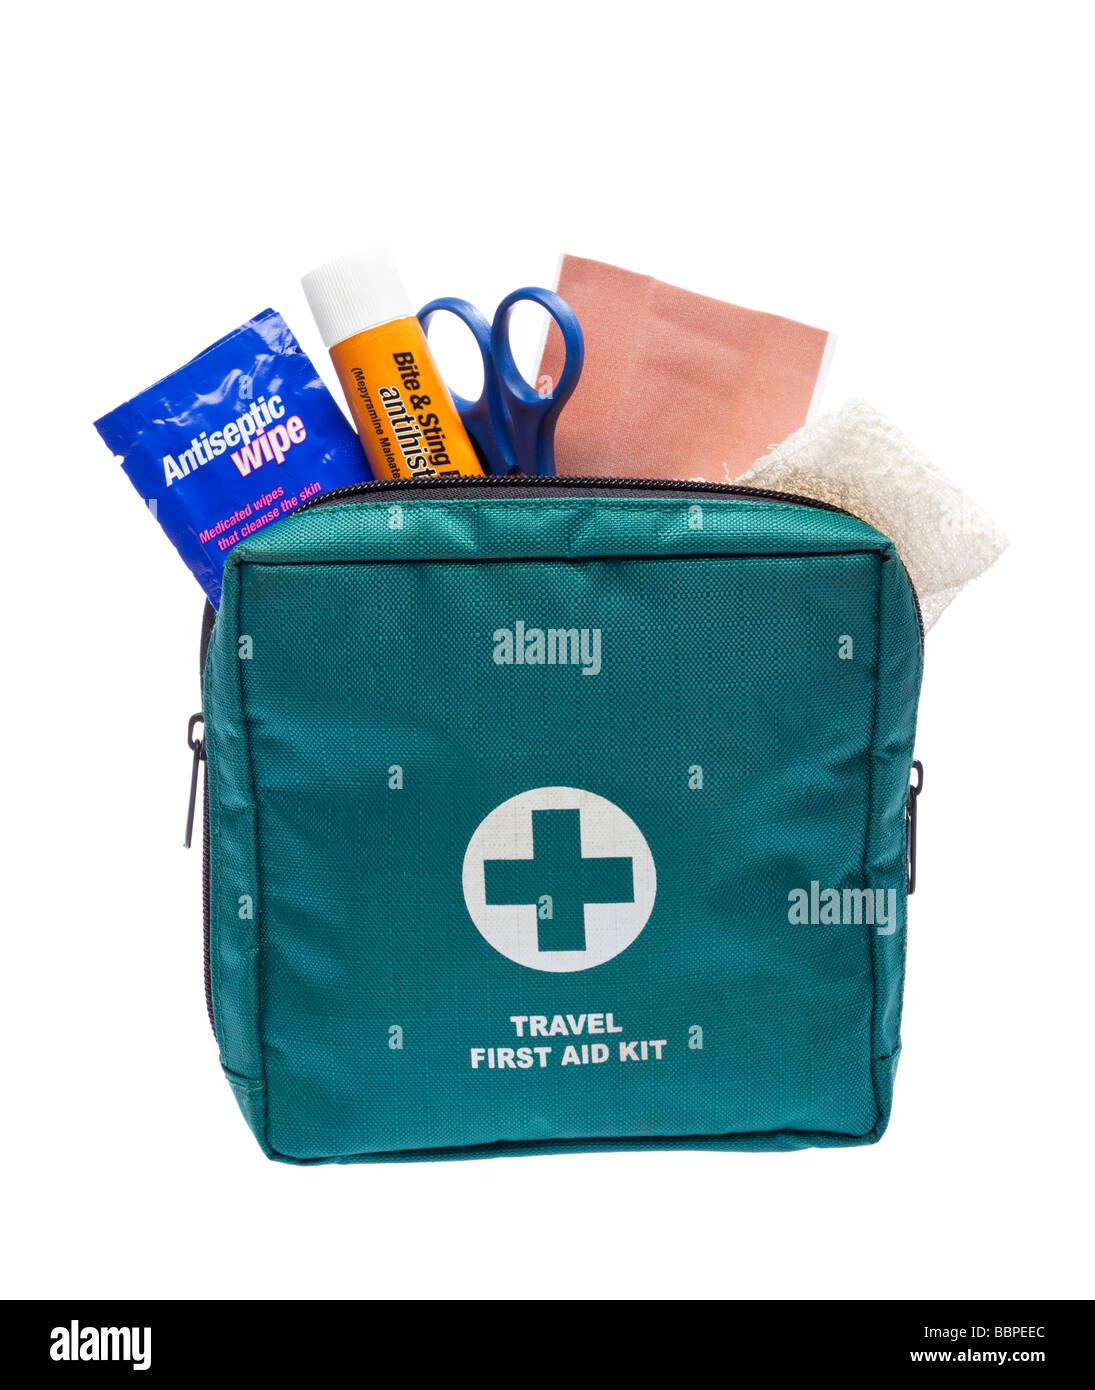 Lifesystems - Outdoor First Aid Kit - Erste Hilfe Set online kaufen